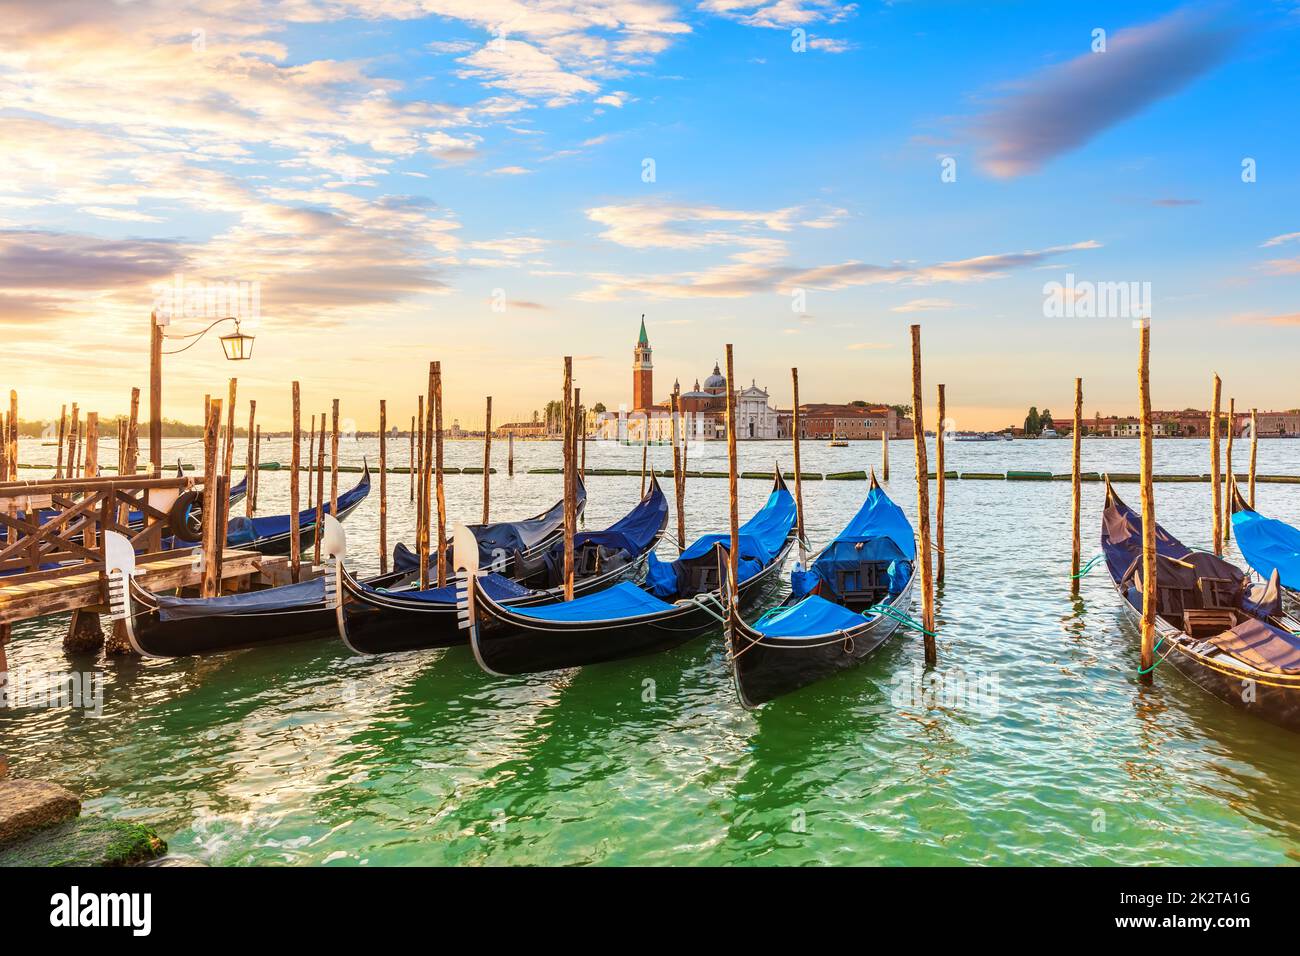 San Giorgio Maggiore Island and Gondolas moored nearby, Venice, Italy Stock Photo